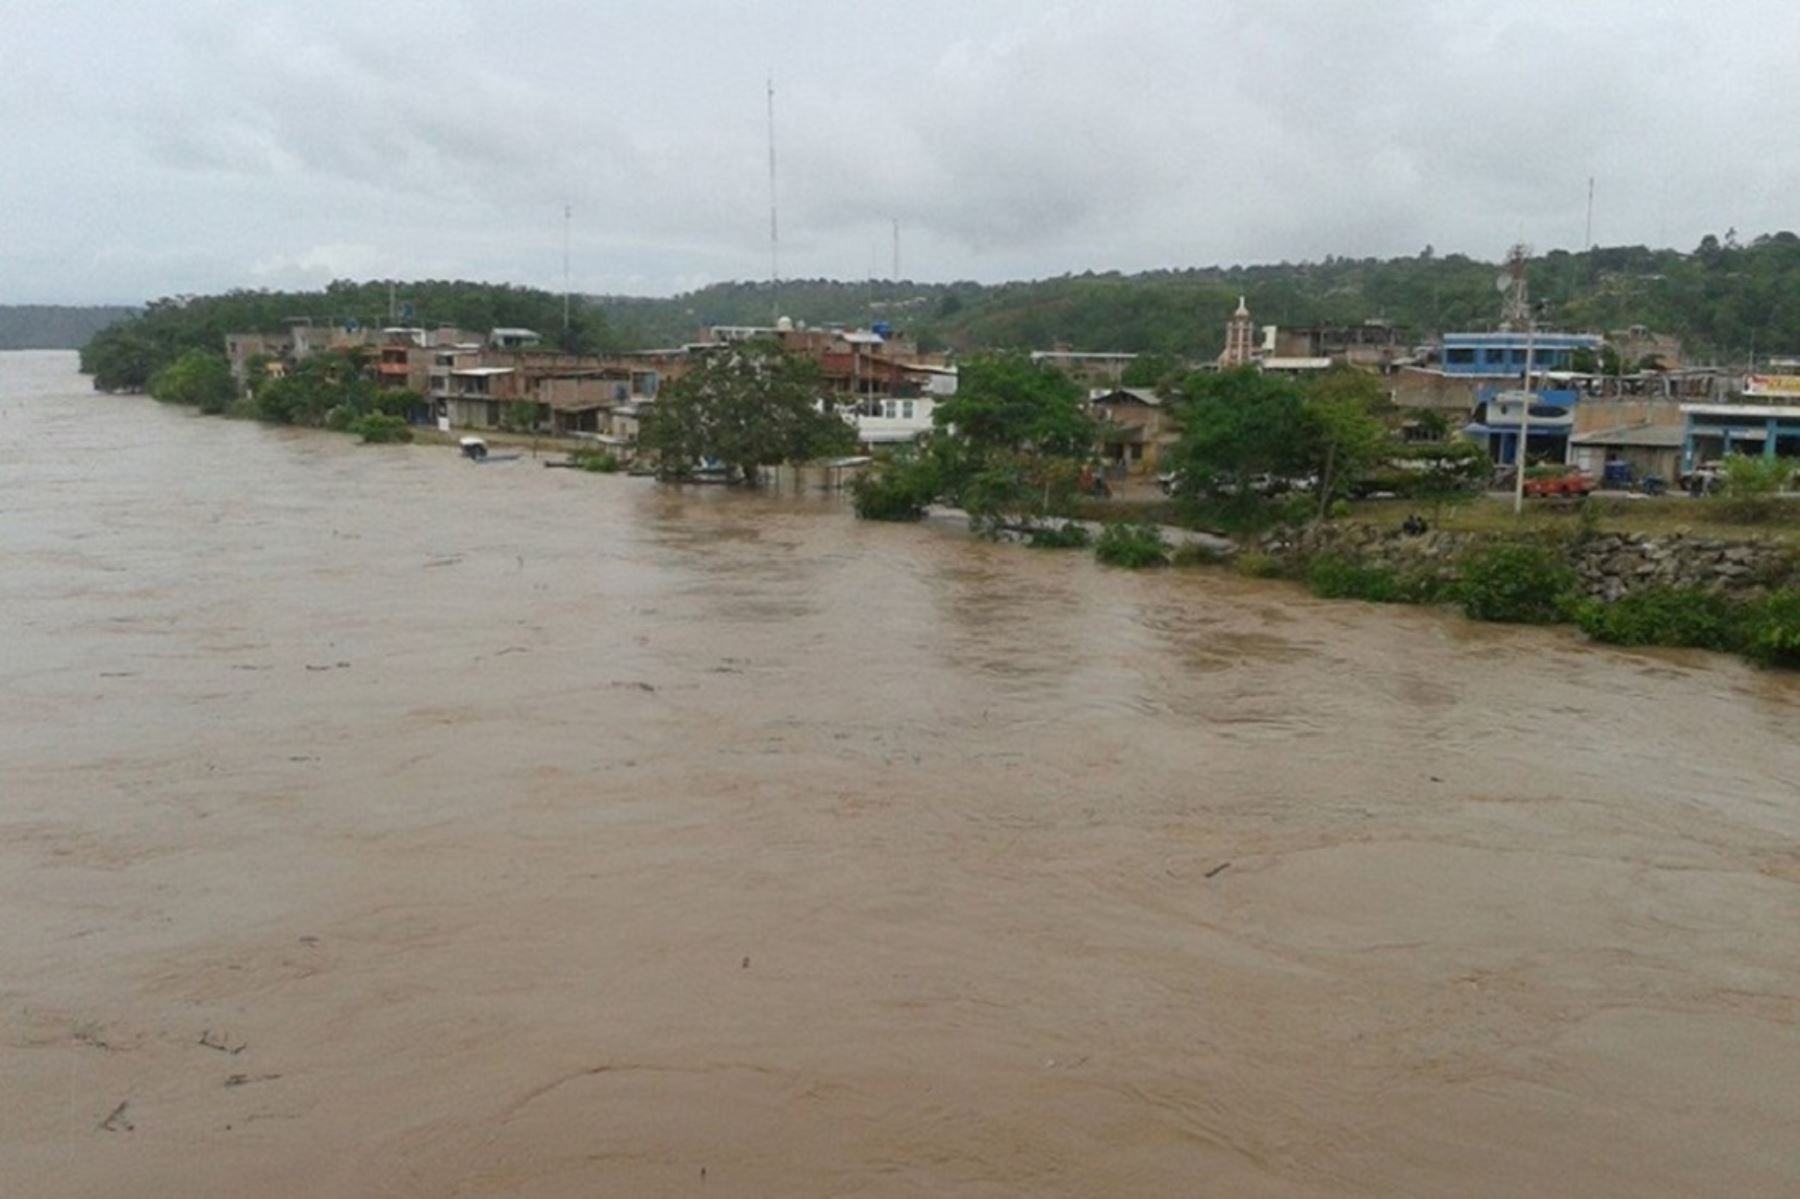 El nivel de agua de los ríos Amazonas y Huallaga descendió en las últimas horas y pasaron de alerta hidrológica naranja a amarilla, informó el Servicio Nacional de Meteorología e Hidrología (Senamhi) al Centro de Operaciones de Emergencia Nacional (COEN). ANDINA/archivo